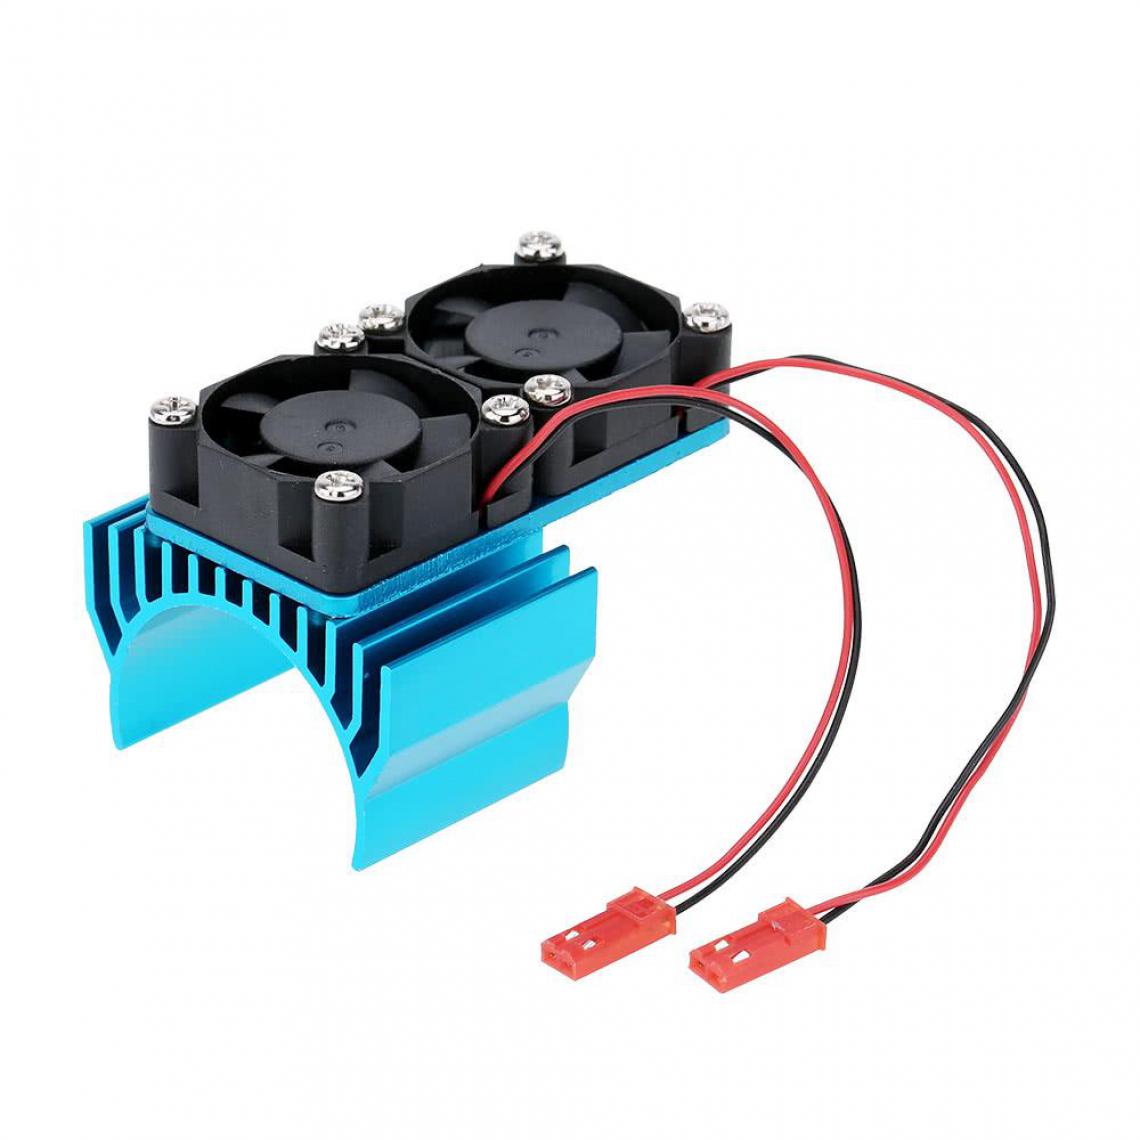 Justgreenbox - Dissipateur thermique moteur 7019 avec deux ventilateurs de refroidissement pour voiture 1/10 HSP RC 540/550 3650, Bleu - Ventilateurs